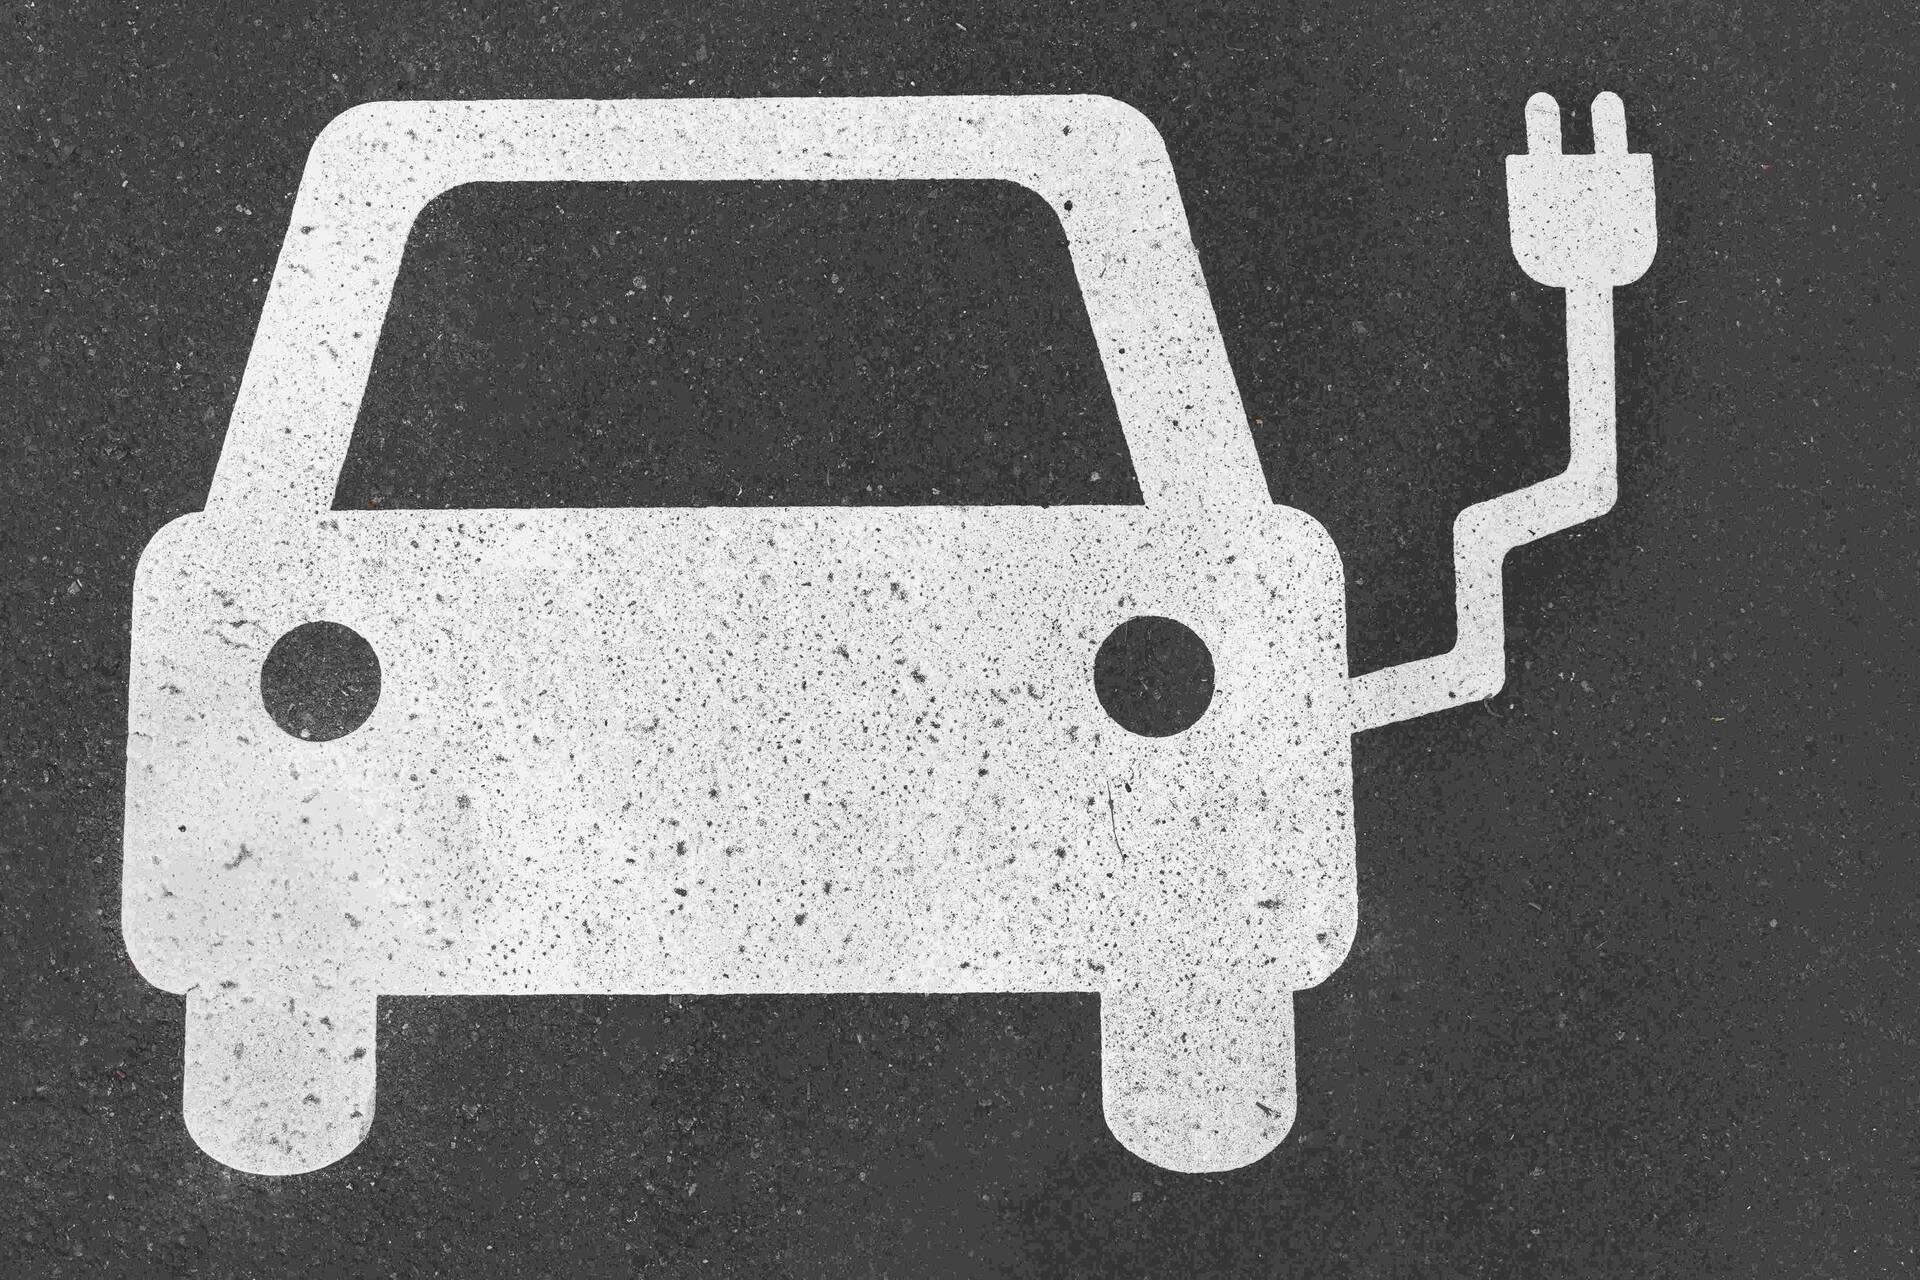 Elektrisk mobilitet: elektrisk mobilitet består av batteri-, hydrogen- og brenselcellekjøretøy og kjøretøy drevet av syntetisk brensel